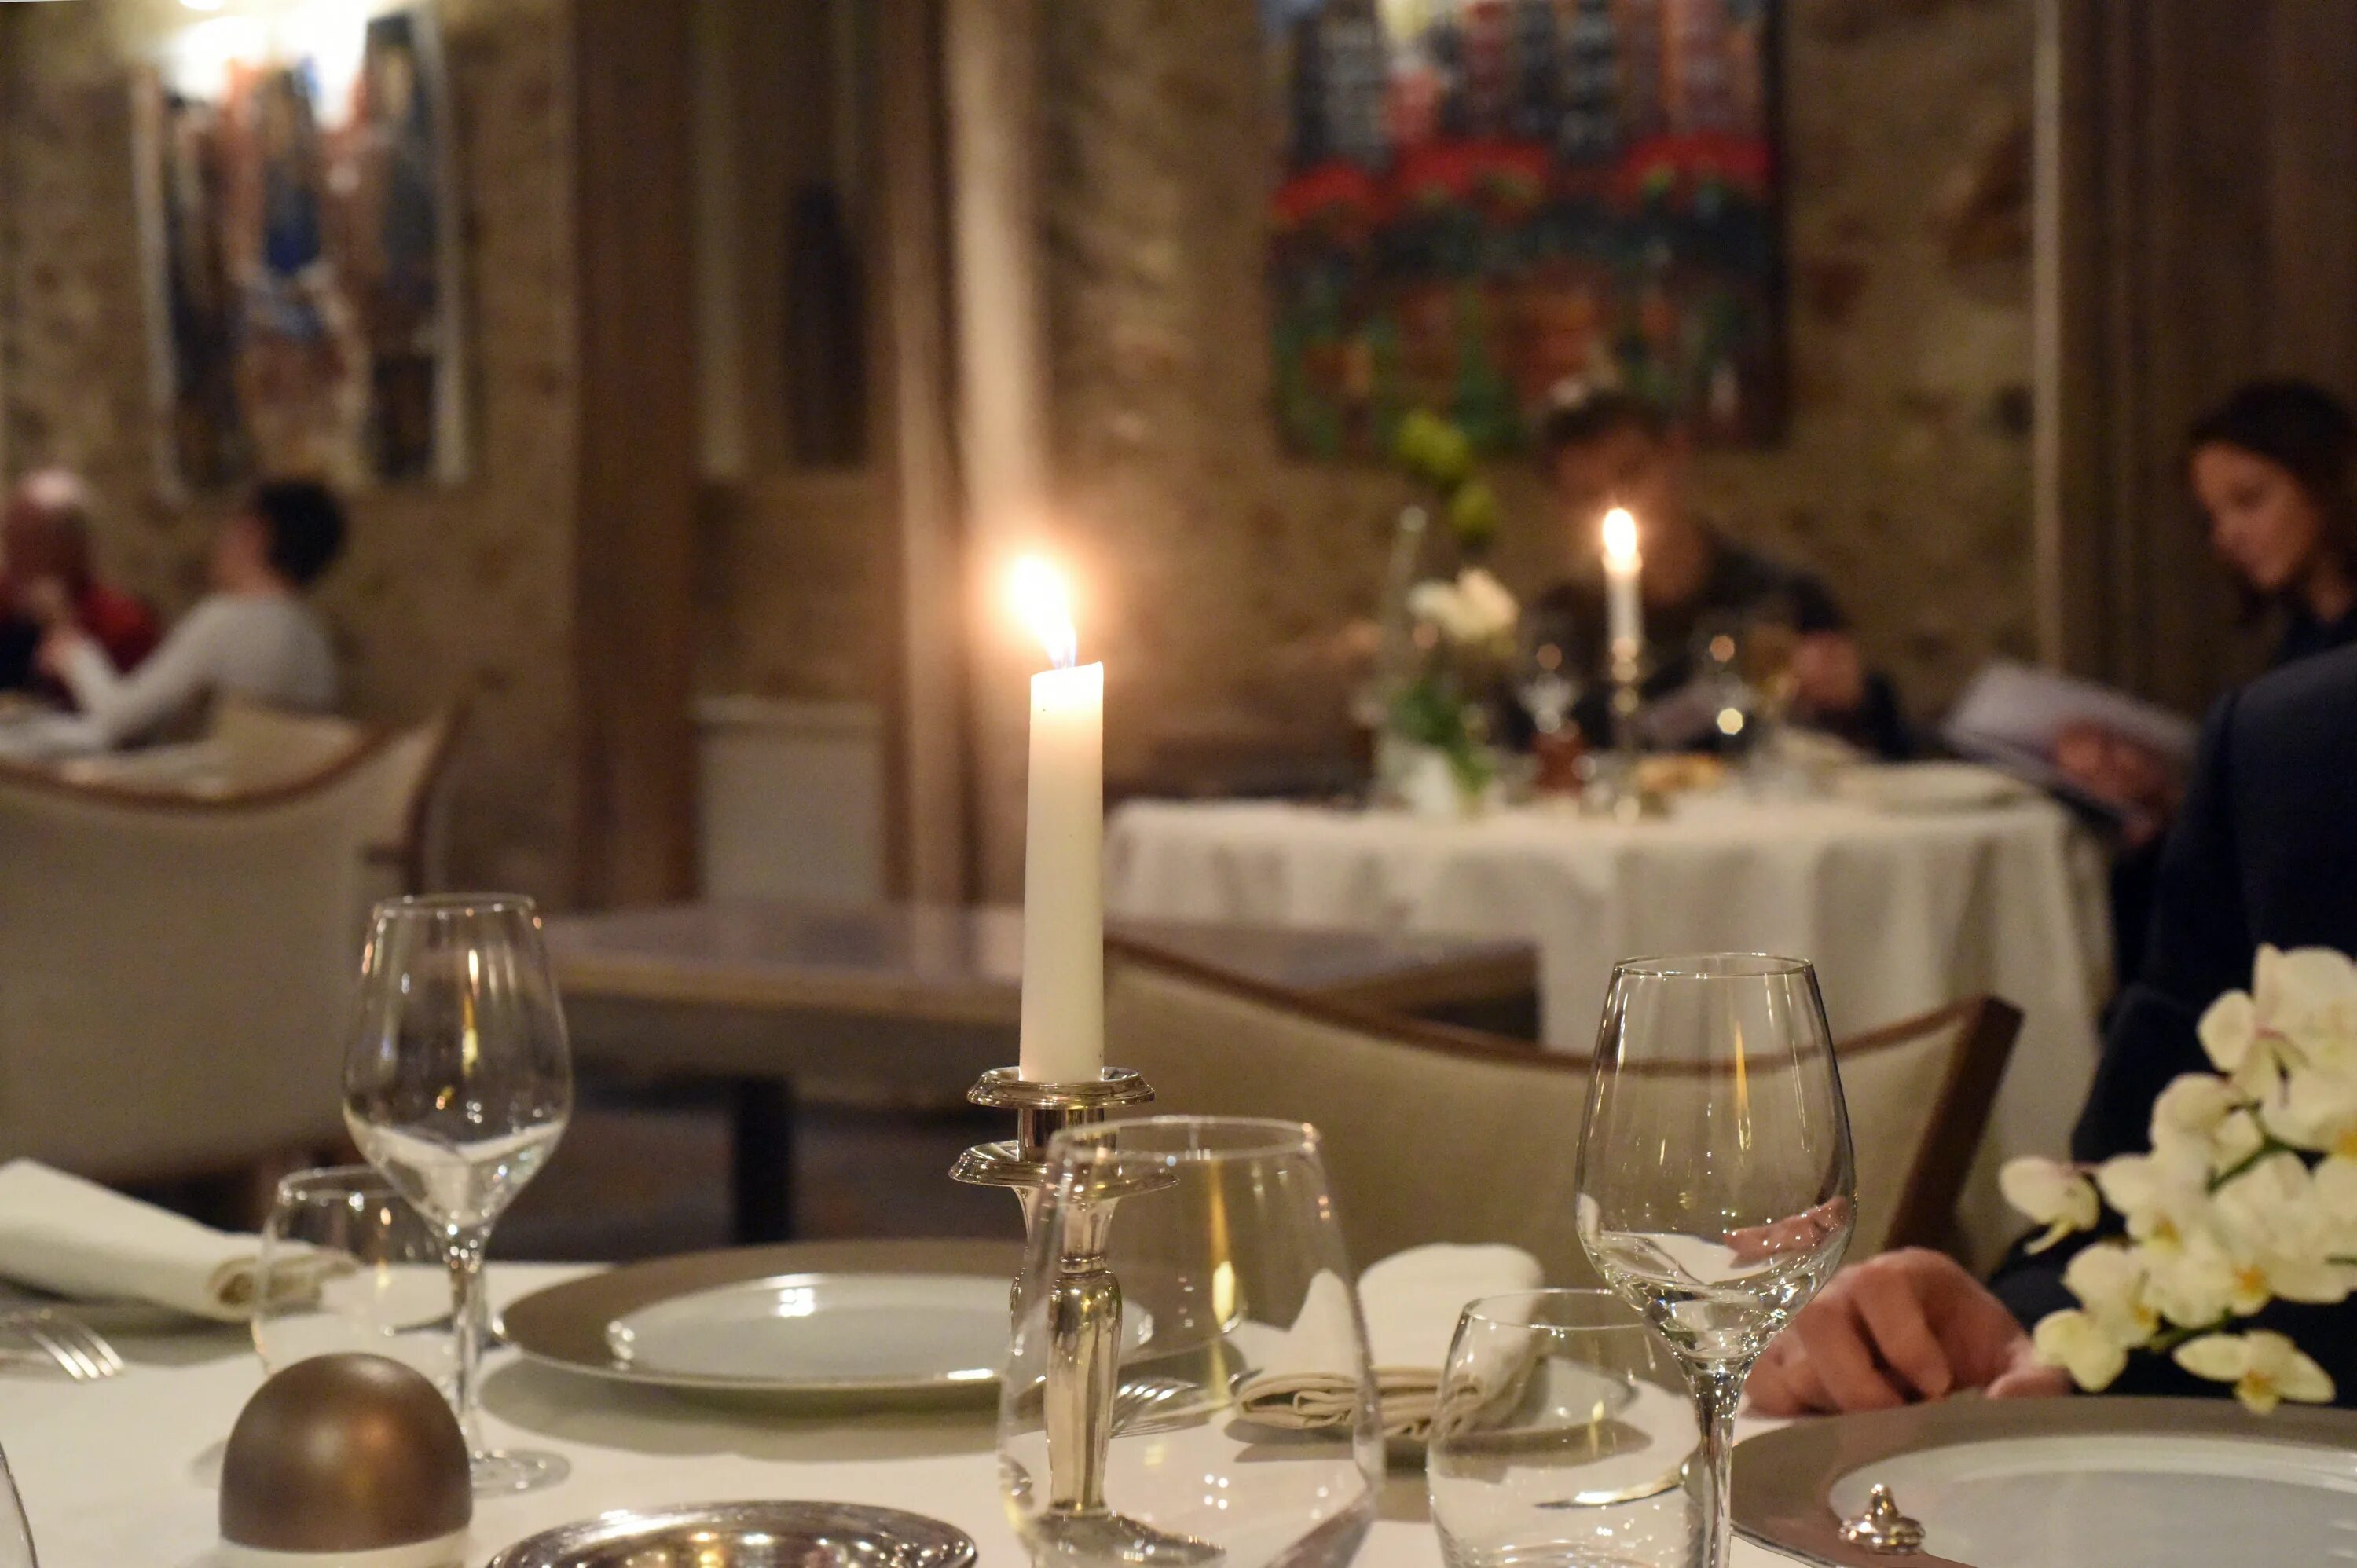 Вели ужин. Столик в ресторане. Сервировка стола в ресторане. Романтический ужин в ресторане. Свечи в ресторане.